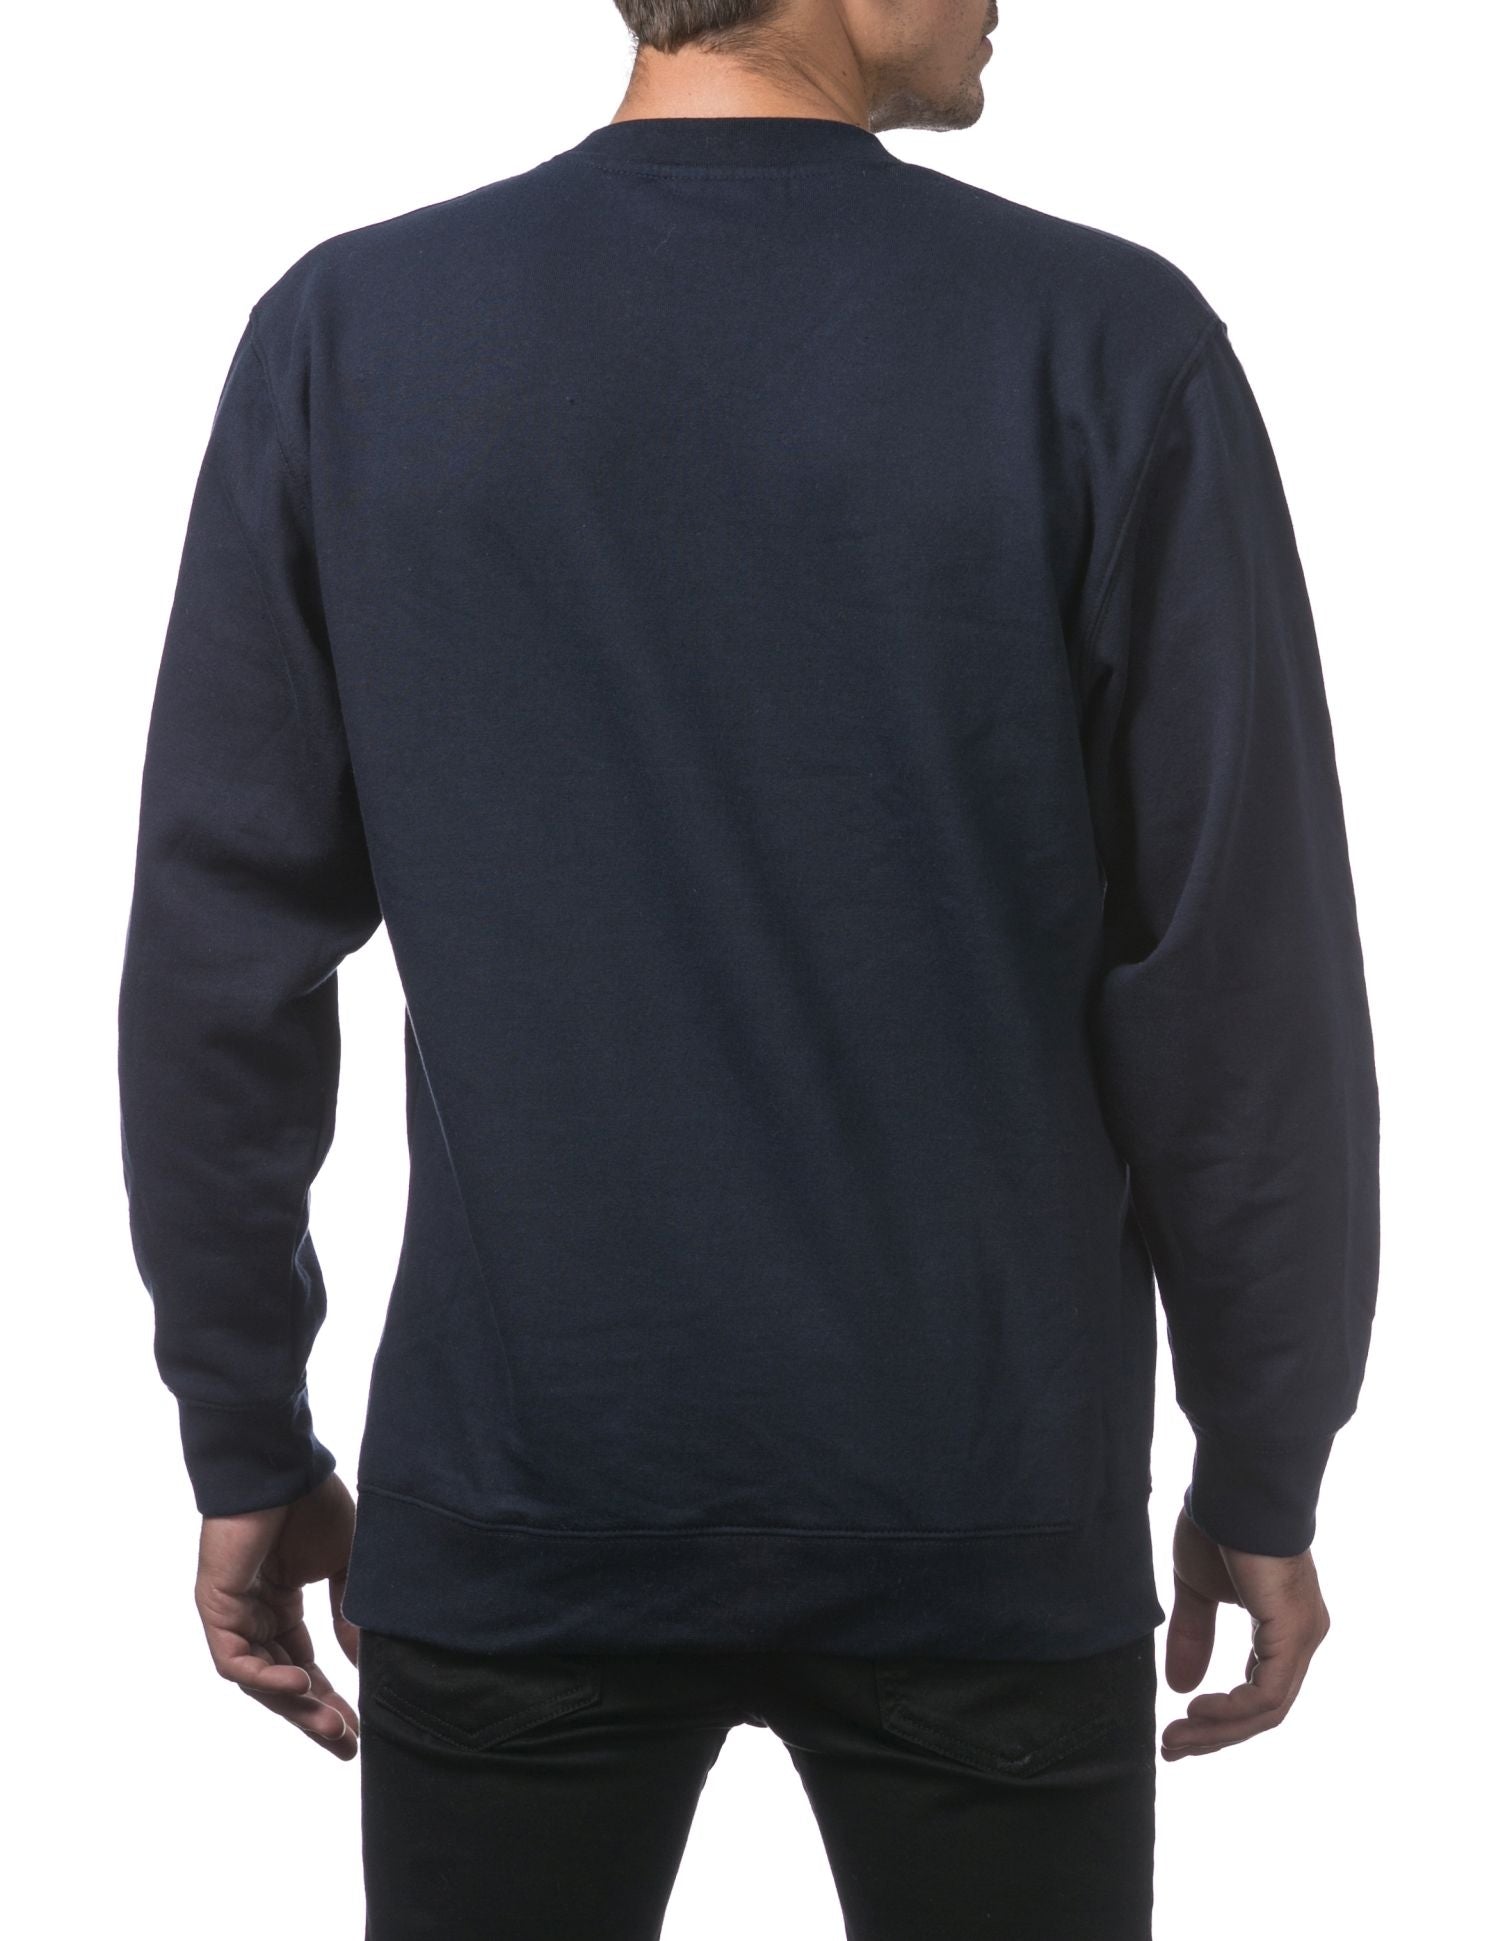 Pro Club Men's Comfort Crew Neck Fleece Pullover Sweater - Navy - Medium - Pro-Distributing